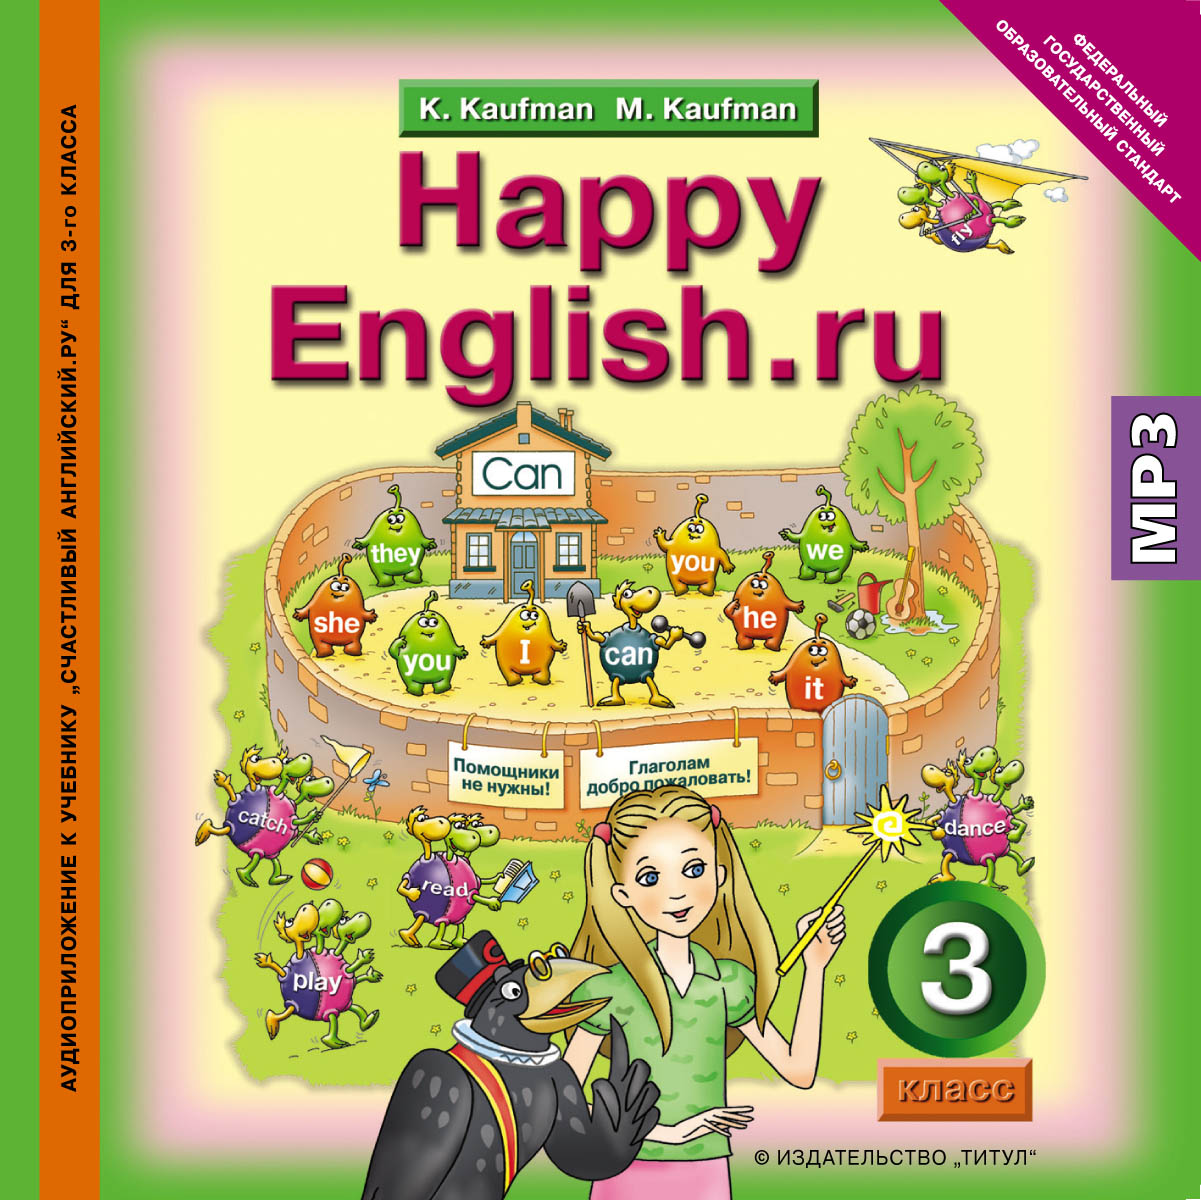 Happy English. ru 3 /Английский язык. 3 класс. Аудиоприложение к учебнику "Счастливый английский" (аудиокурс MP3)